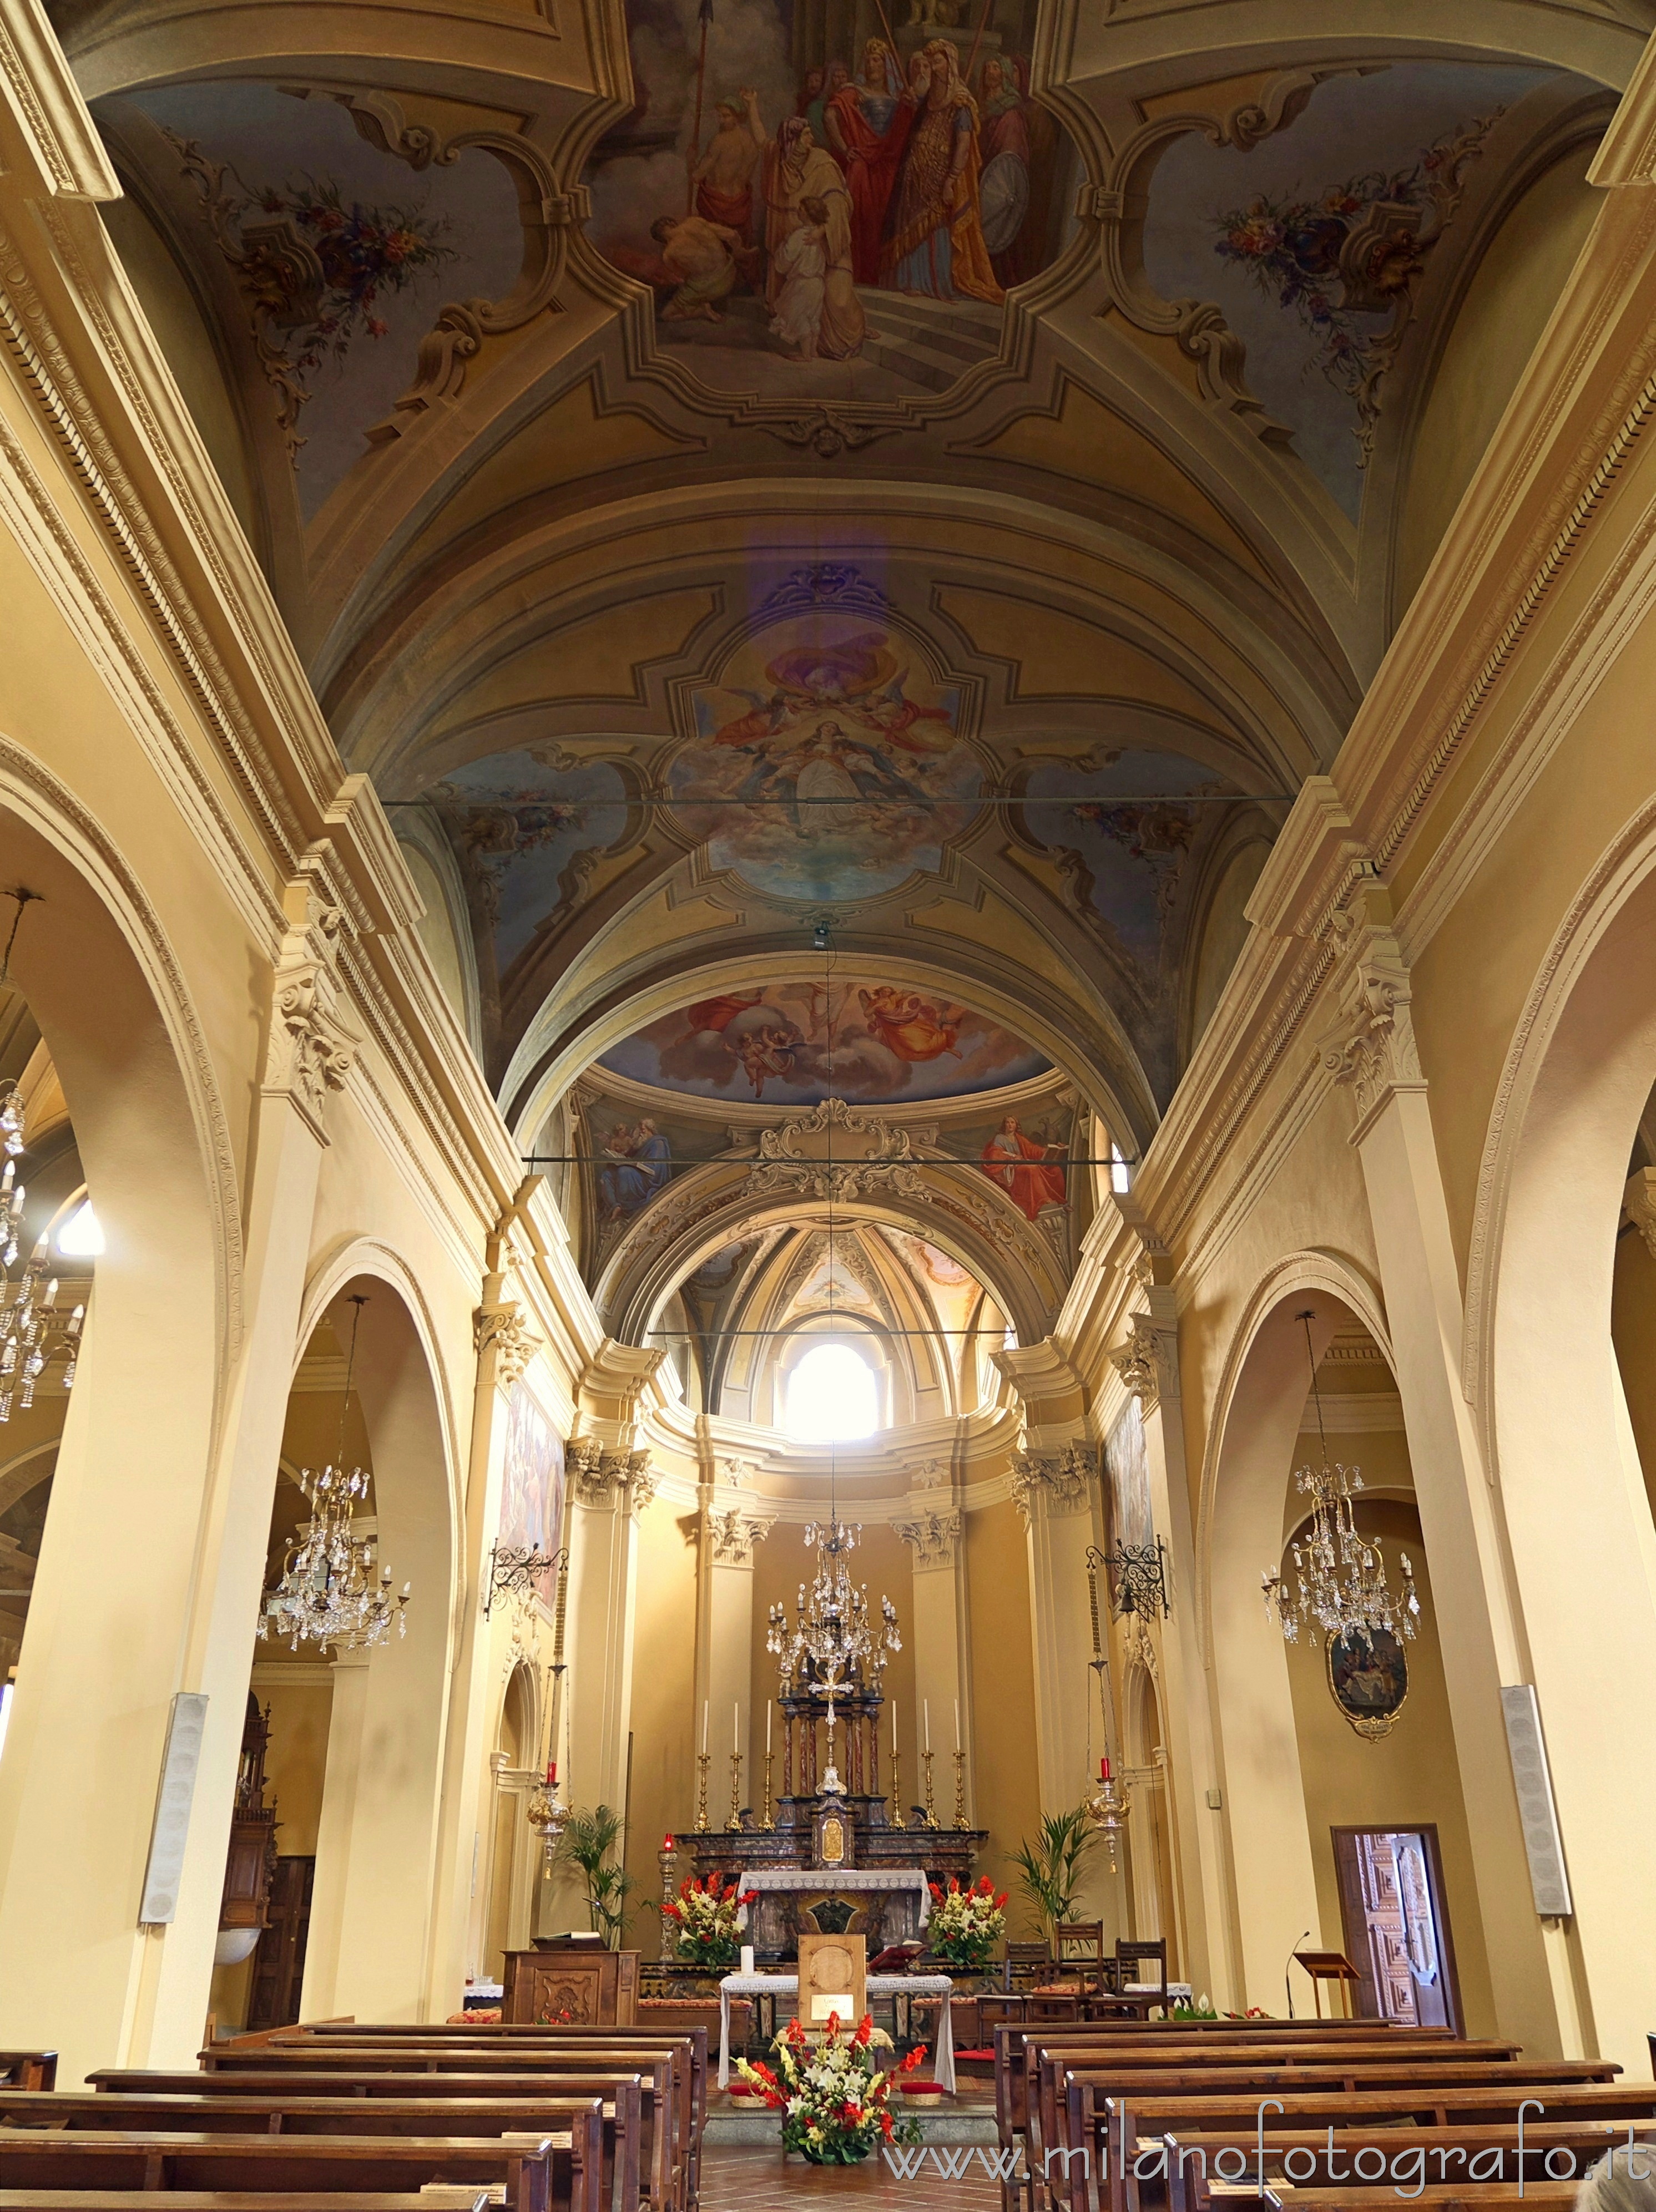 Trivero (Biella, Italy): Onterior of the Main Church - Trivero (Biella, Italy)